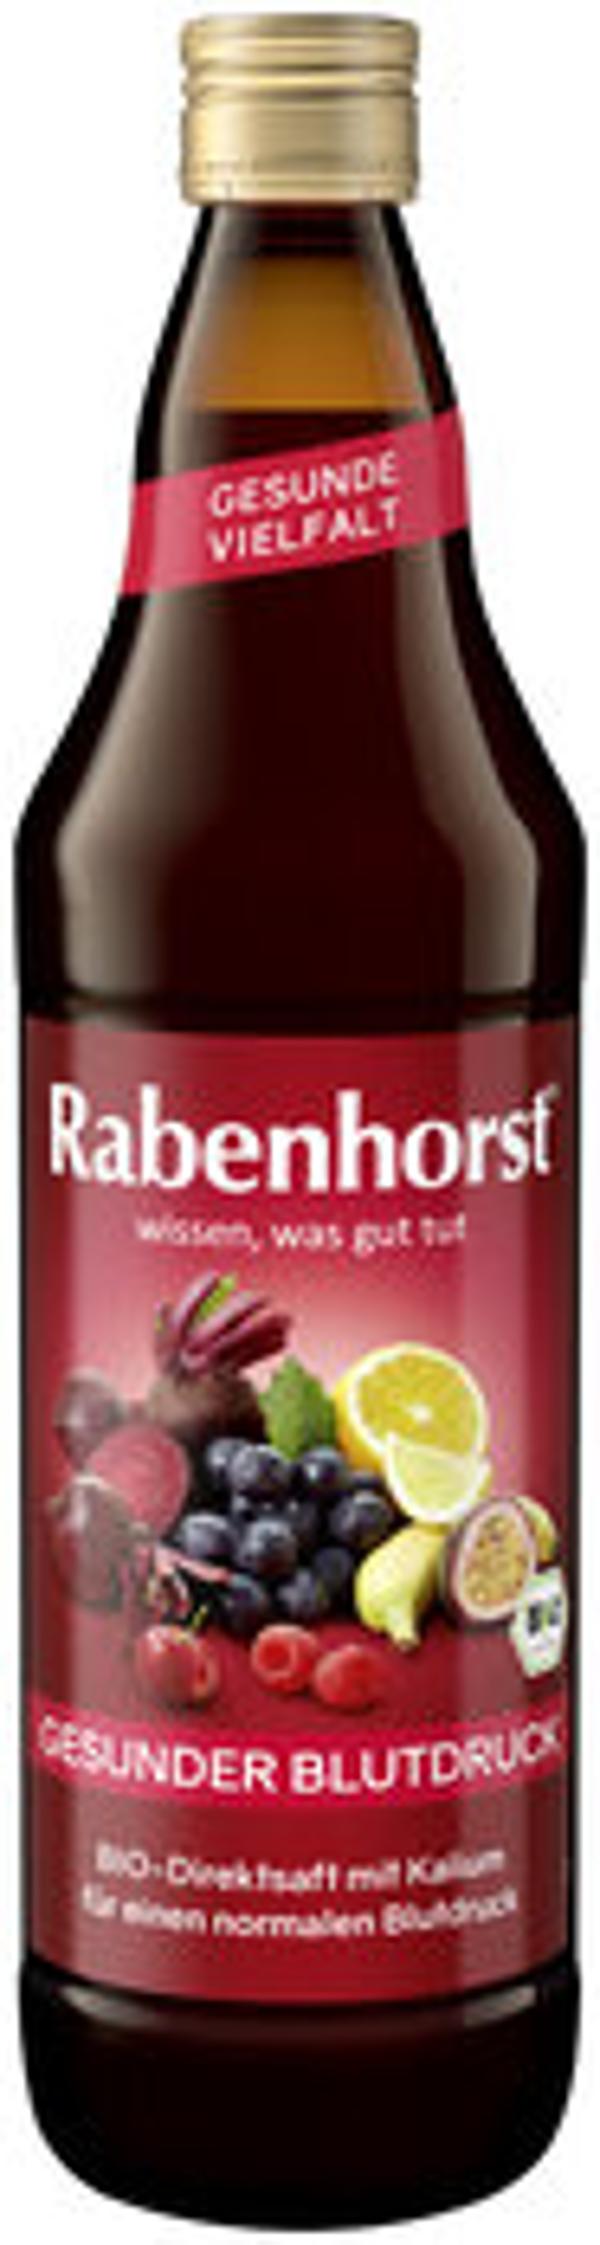 Produktfoto zu Rabenhorst Gesunder Blutdruck 0,75l